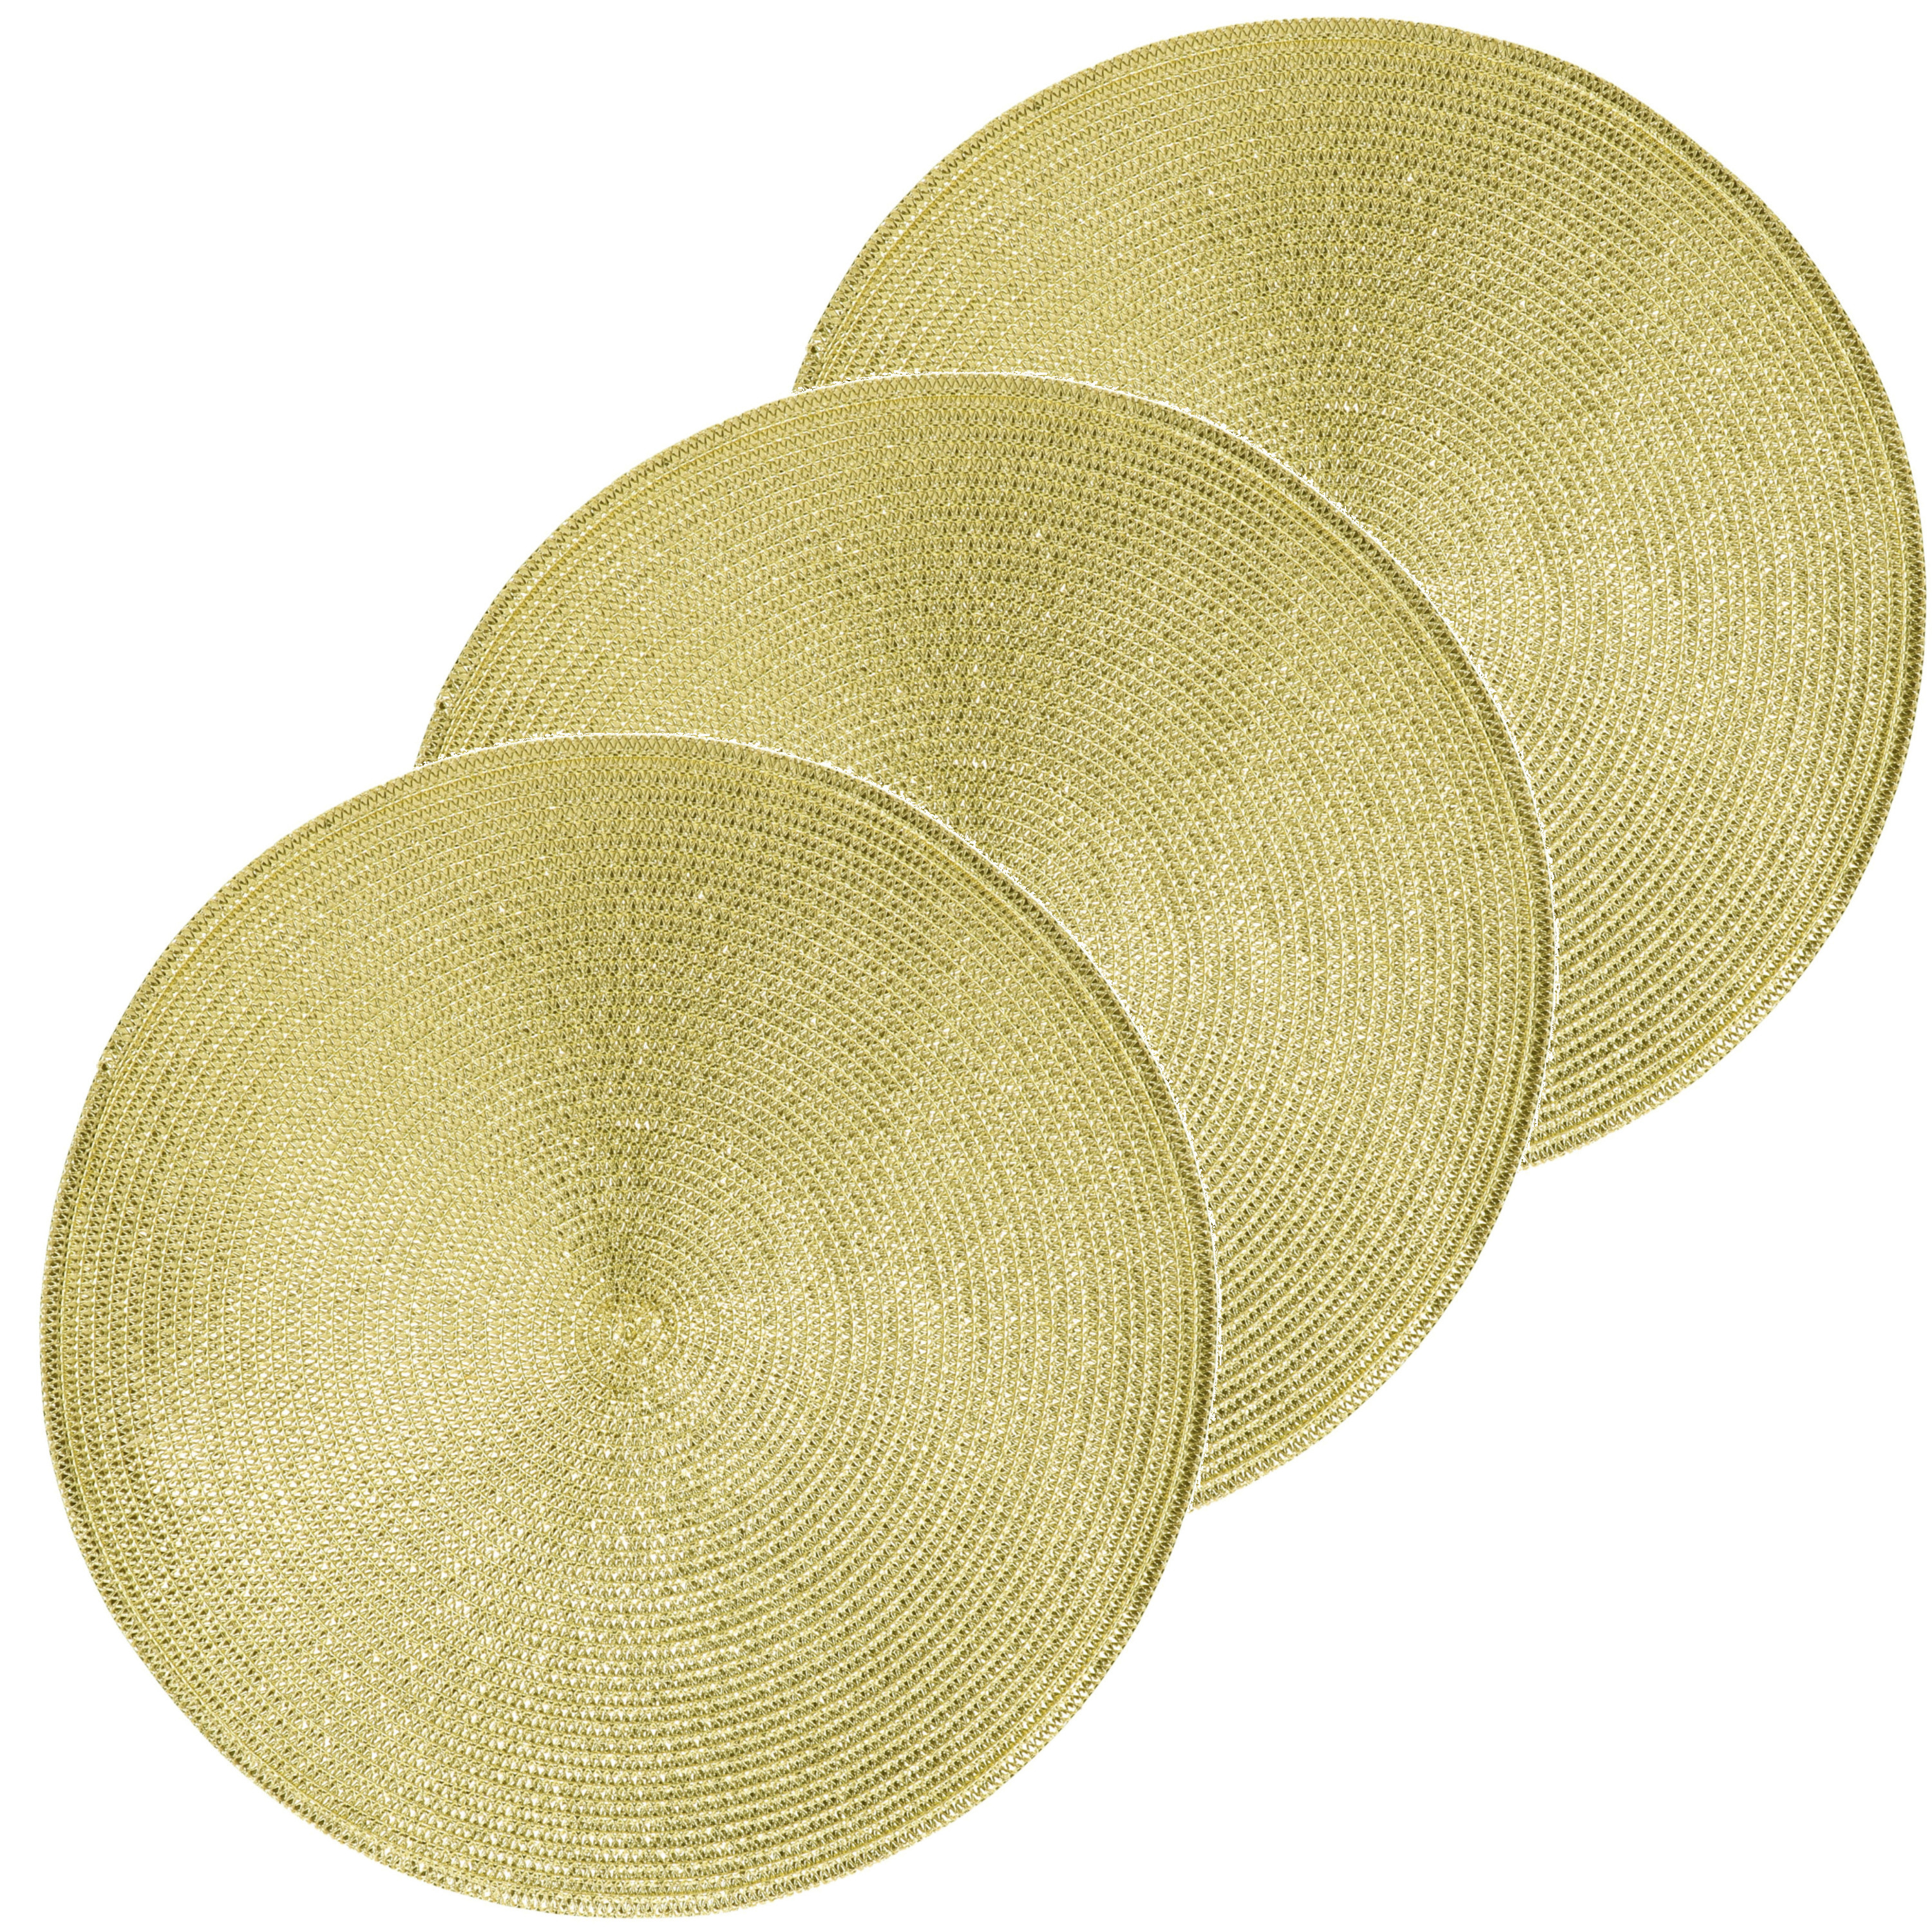 6x Ronde placemats glimmend goud 38 cm geweven/gevlochten